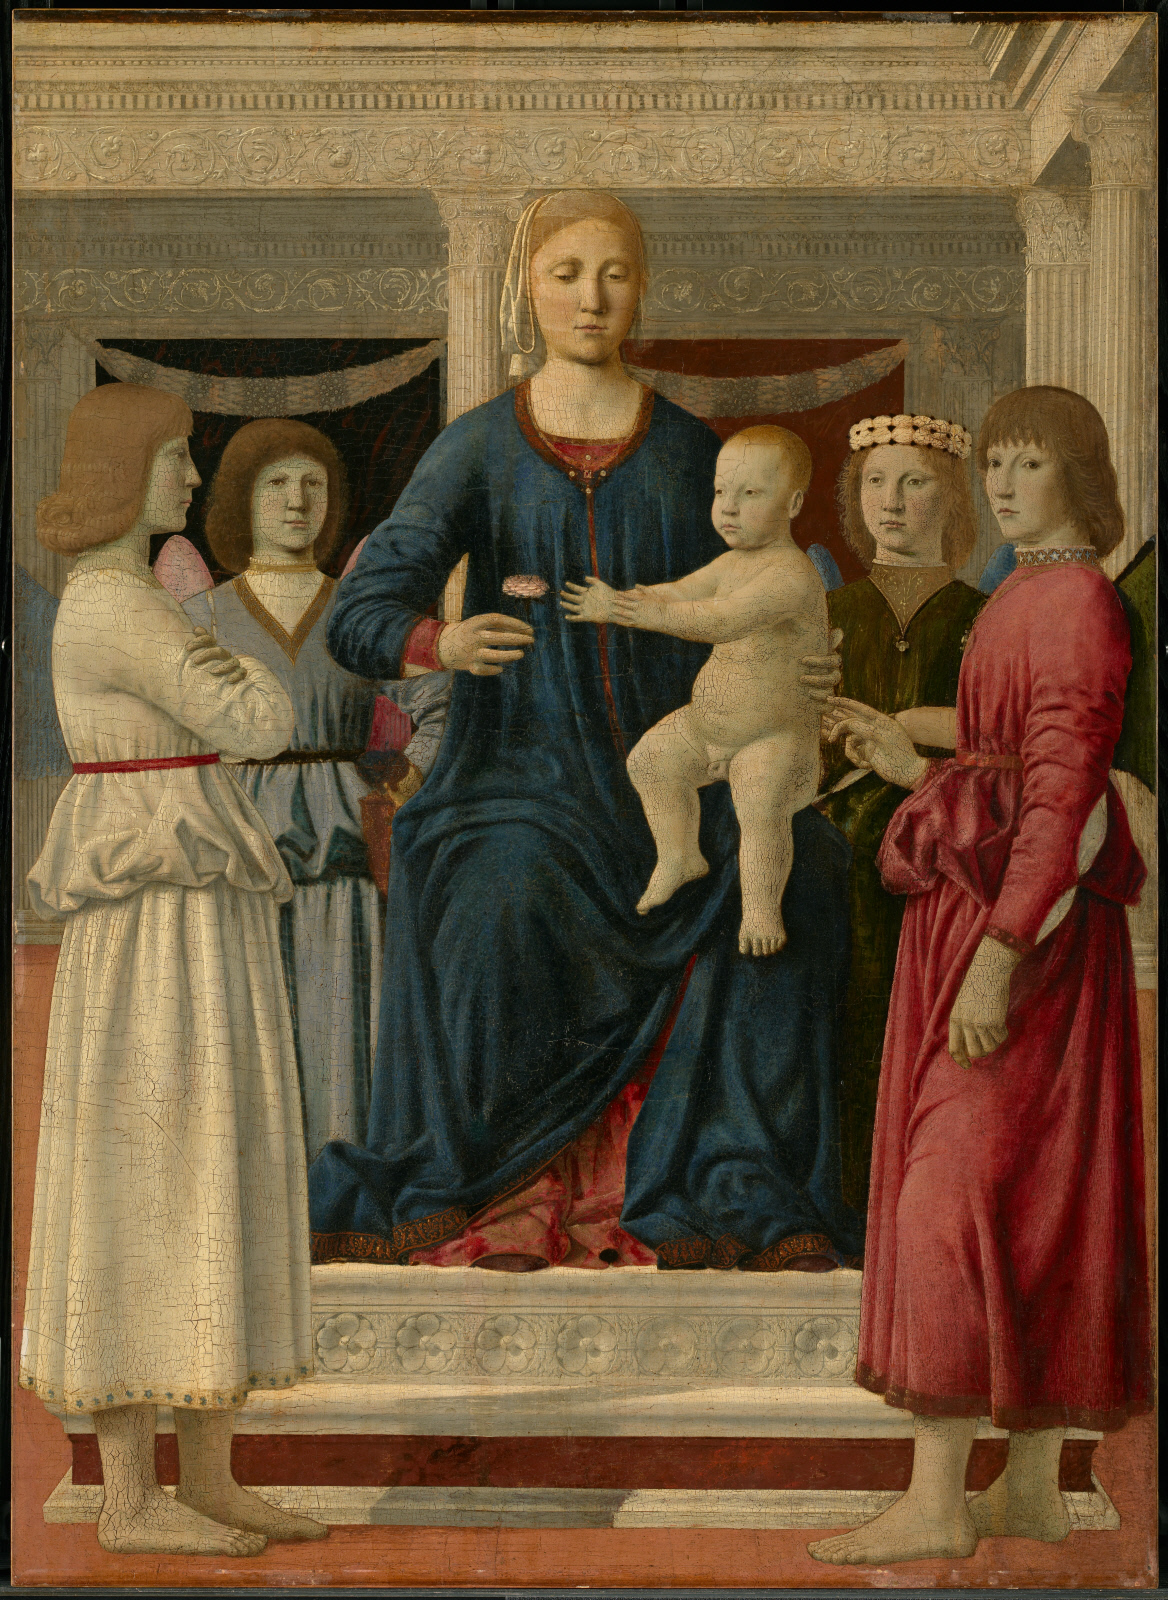 Богородица са дететом на престолу са четири анђела by Piero della Francesca - око 1460–70. - 107.8 x 78.4 cm 